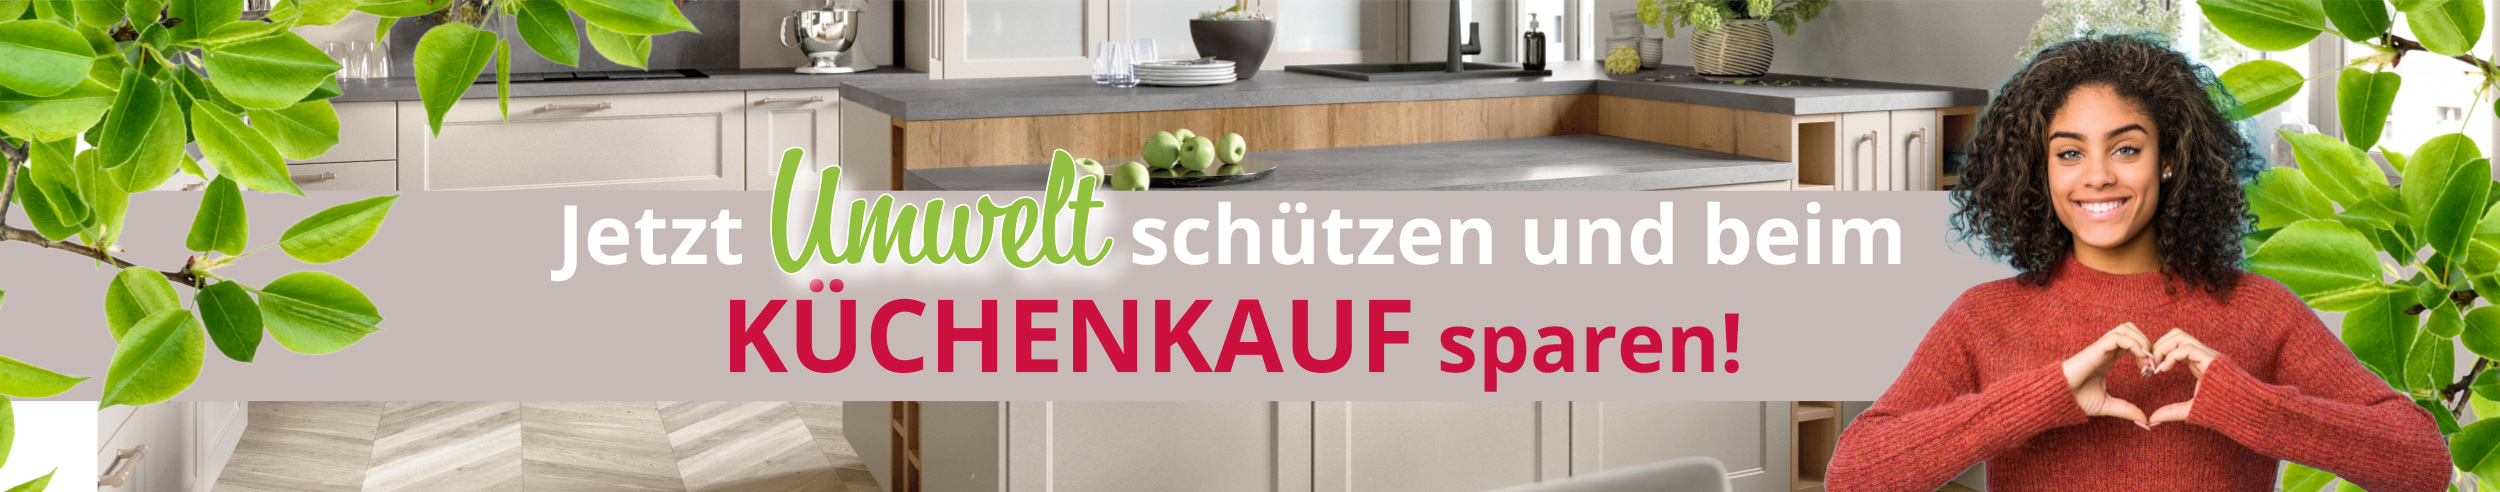 Jetzt Umwelt schützen und beim Küchenkauf sparen! Wir entsorgen Ihre alte Küchen umweltgerecht und kostenlos! Schauen Sie vorbei bei Wohnlich Westerburg und überzeugen sich selbst!